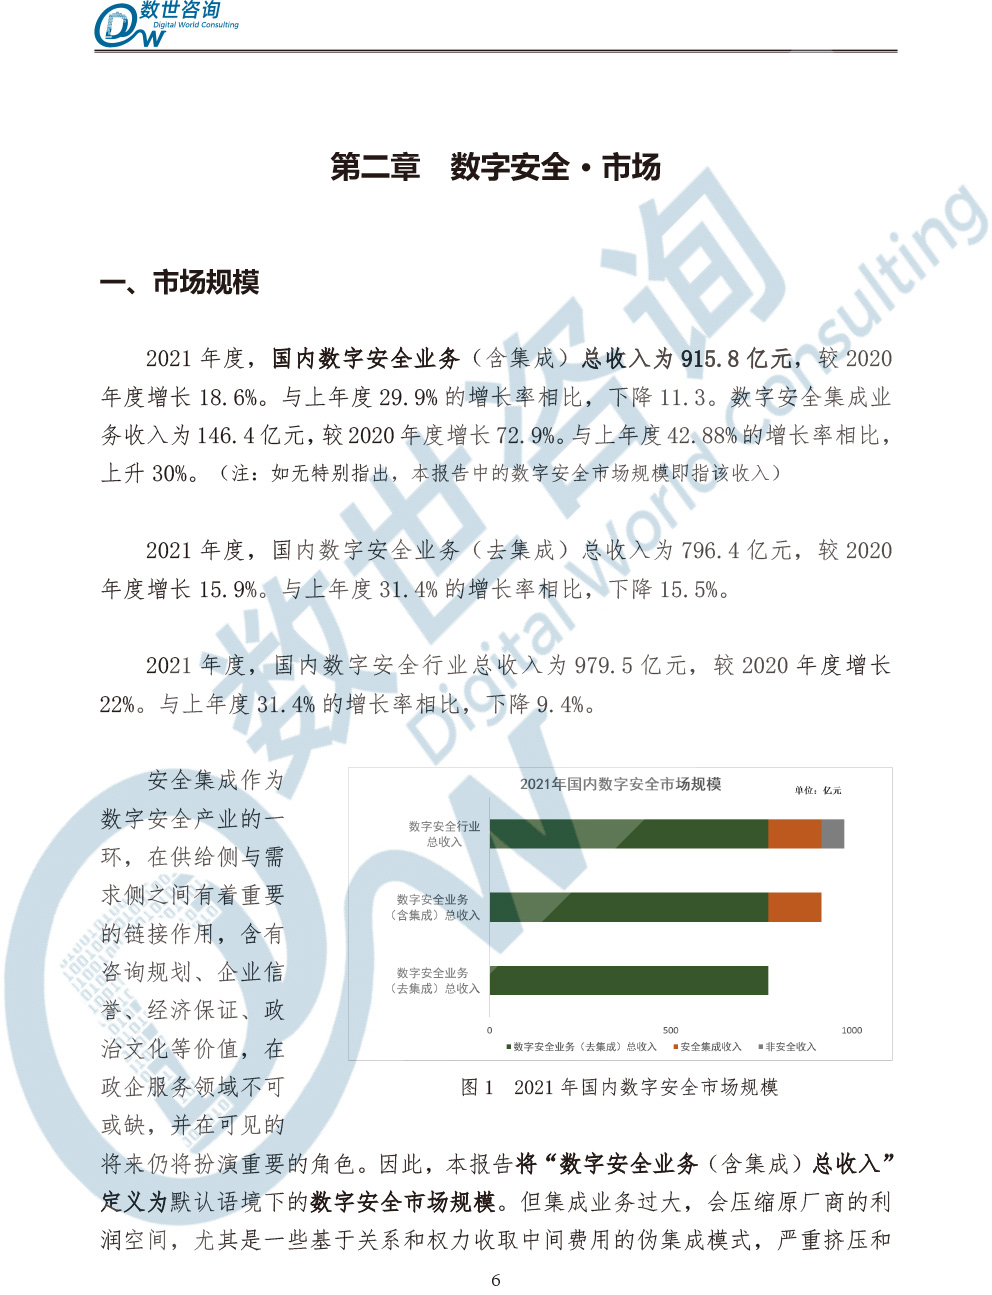 中国数字安全产业统计与分析报告(2022)图-13.jpg